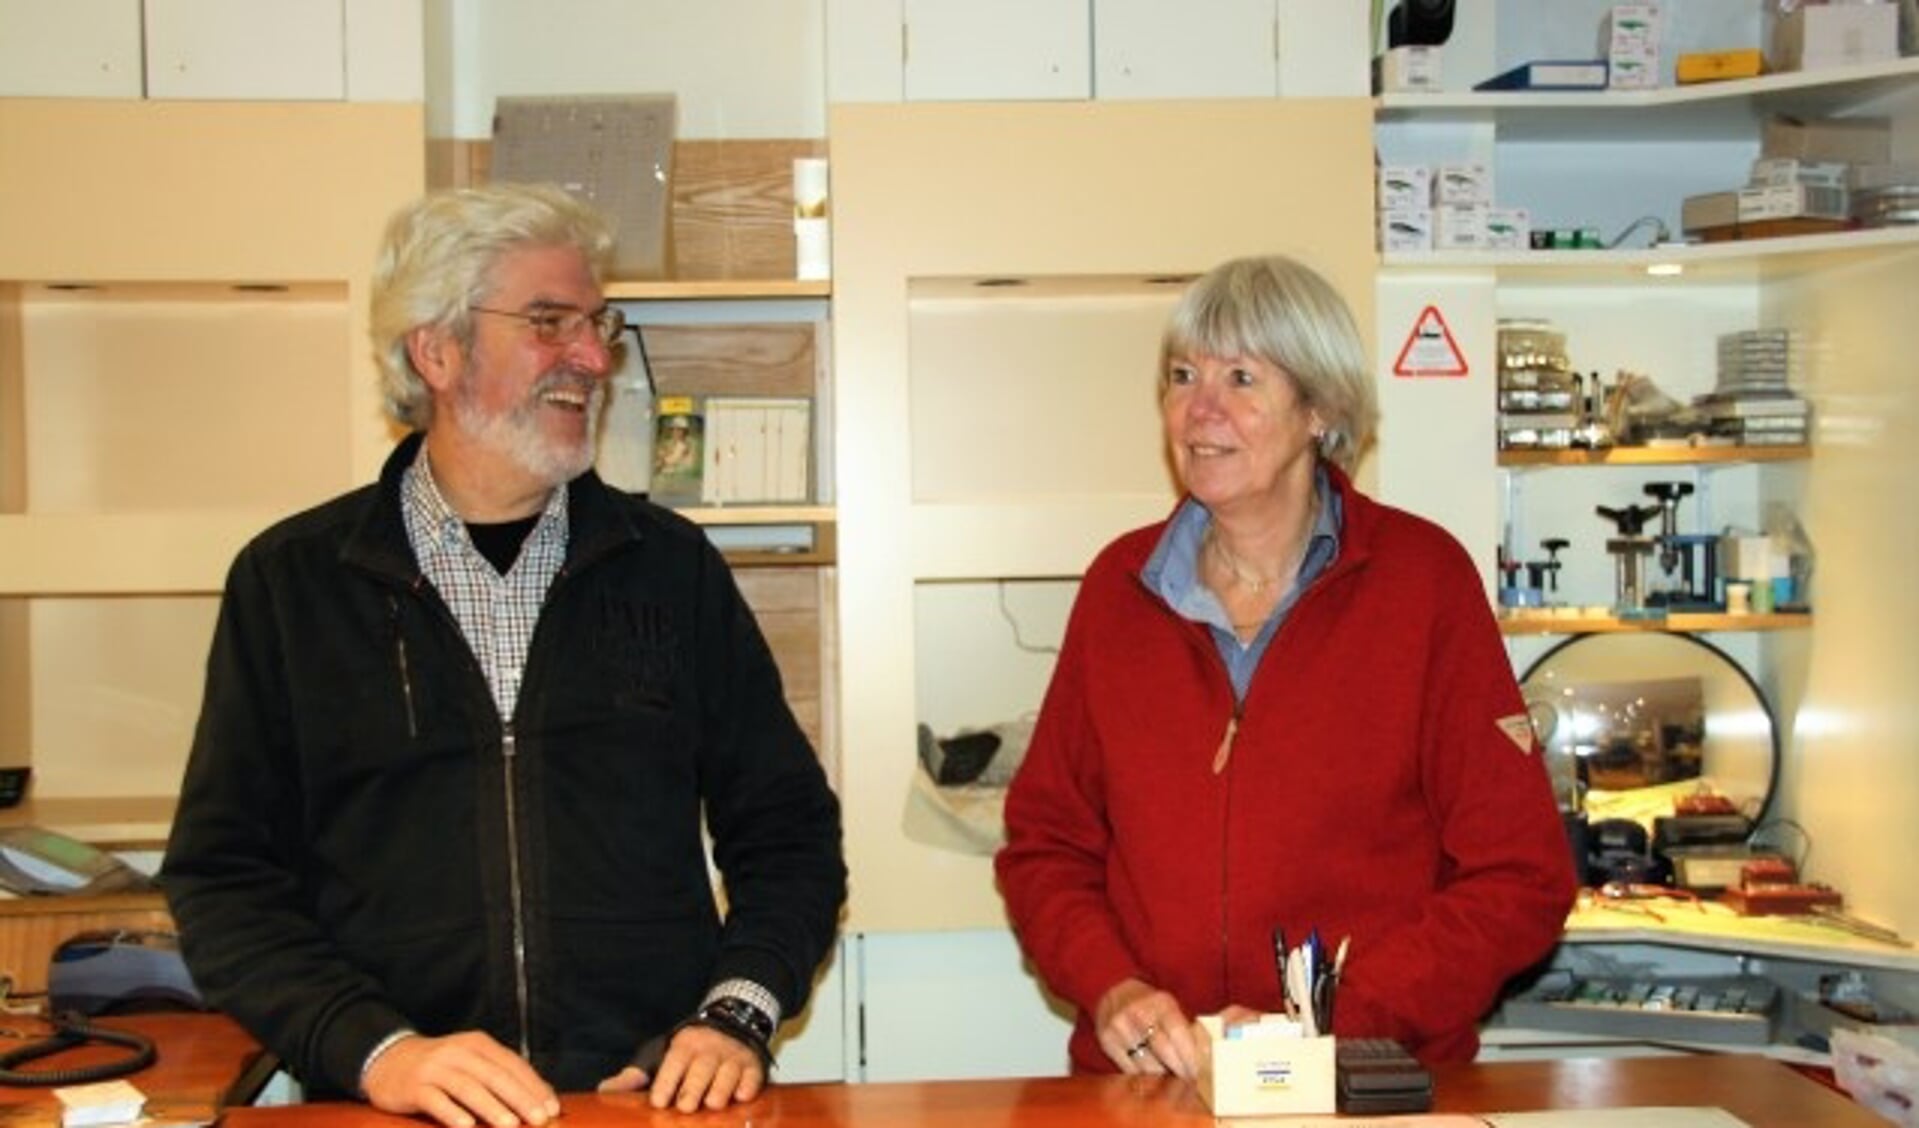 juwelier edelsmid Rob van Eck met zijn vrouw Marian achter de toonbank van hun zaak. FOTO: Asta Diepen Stöpler